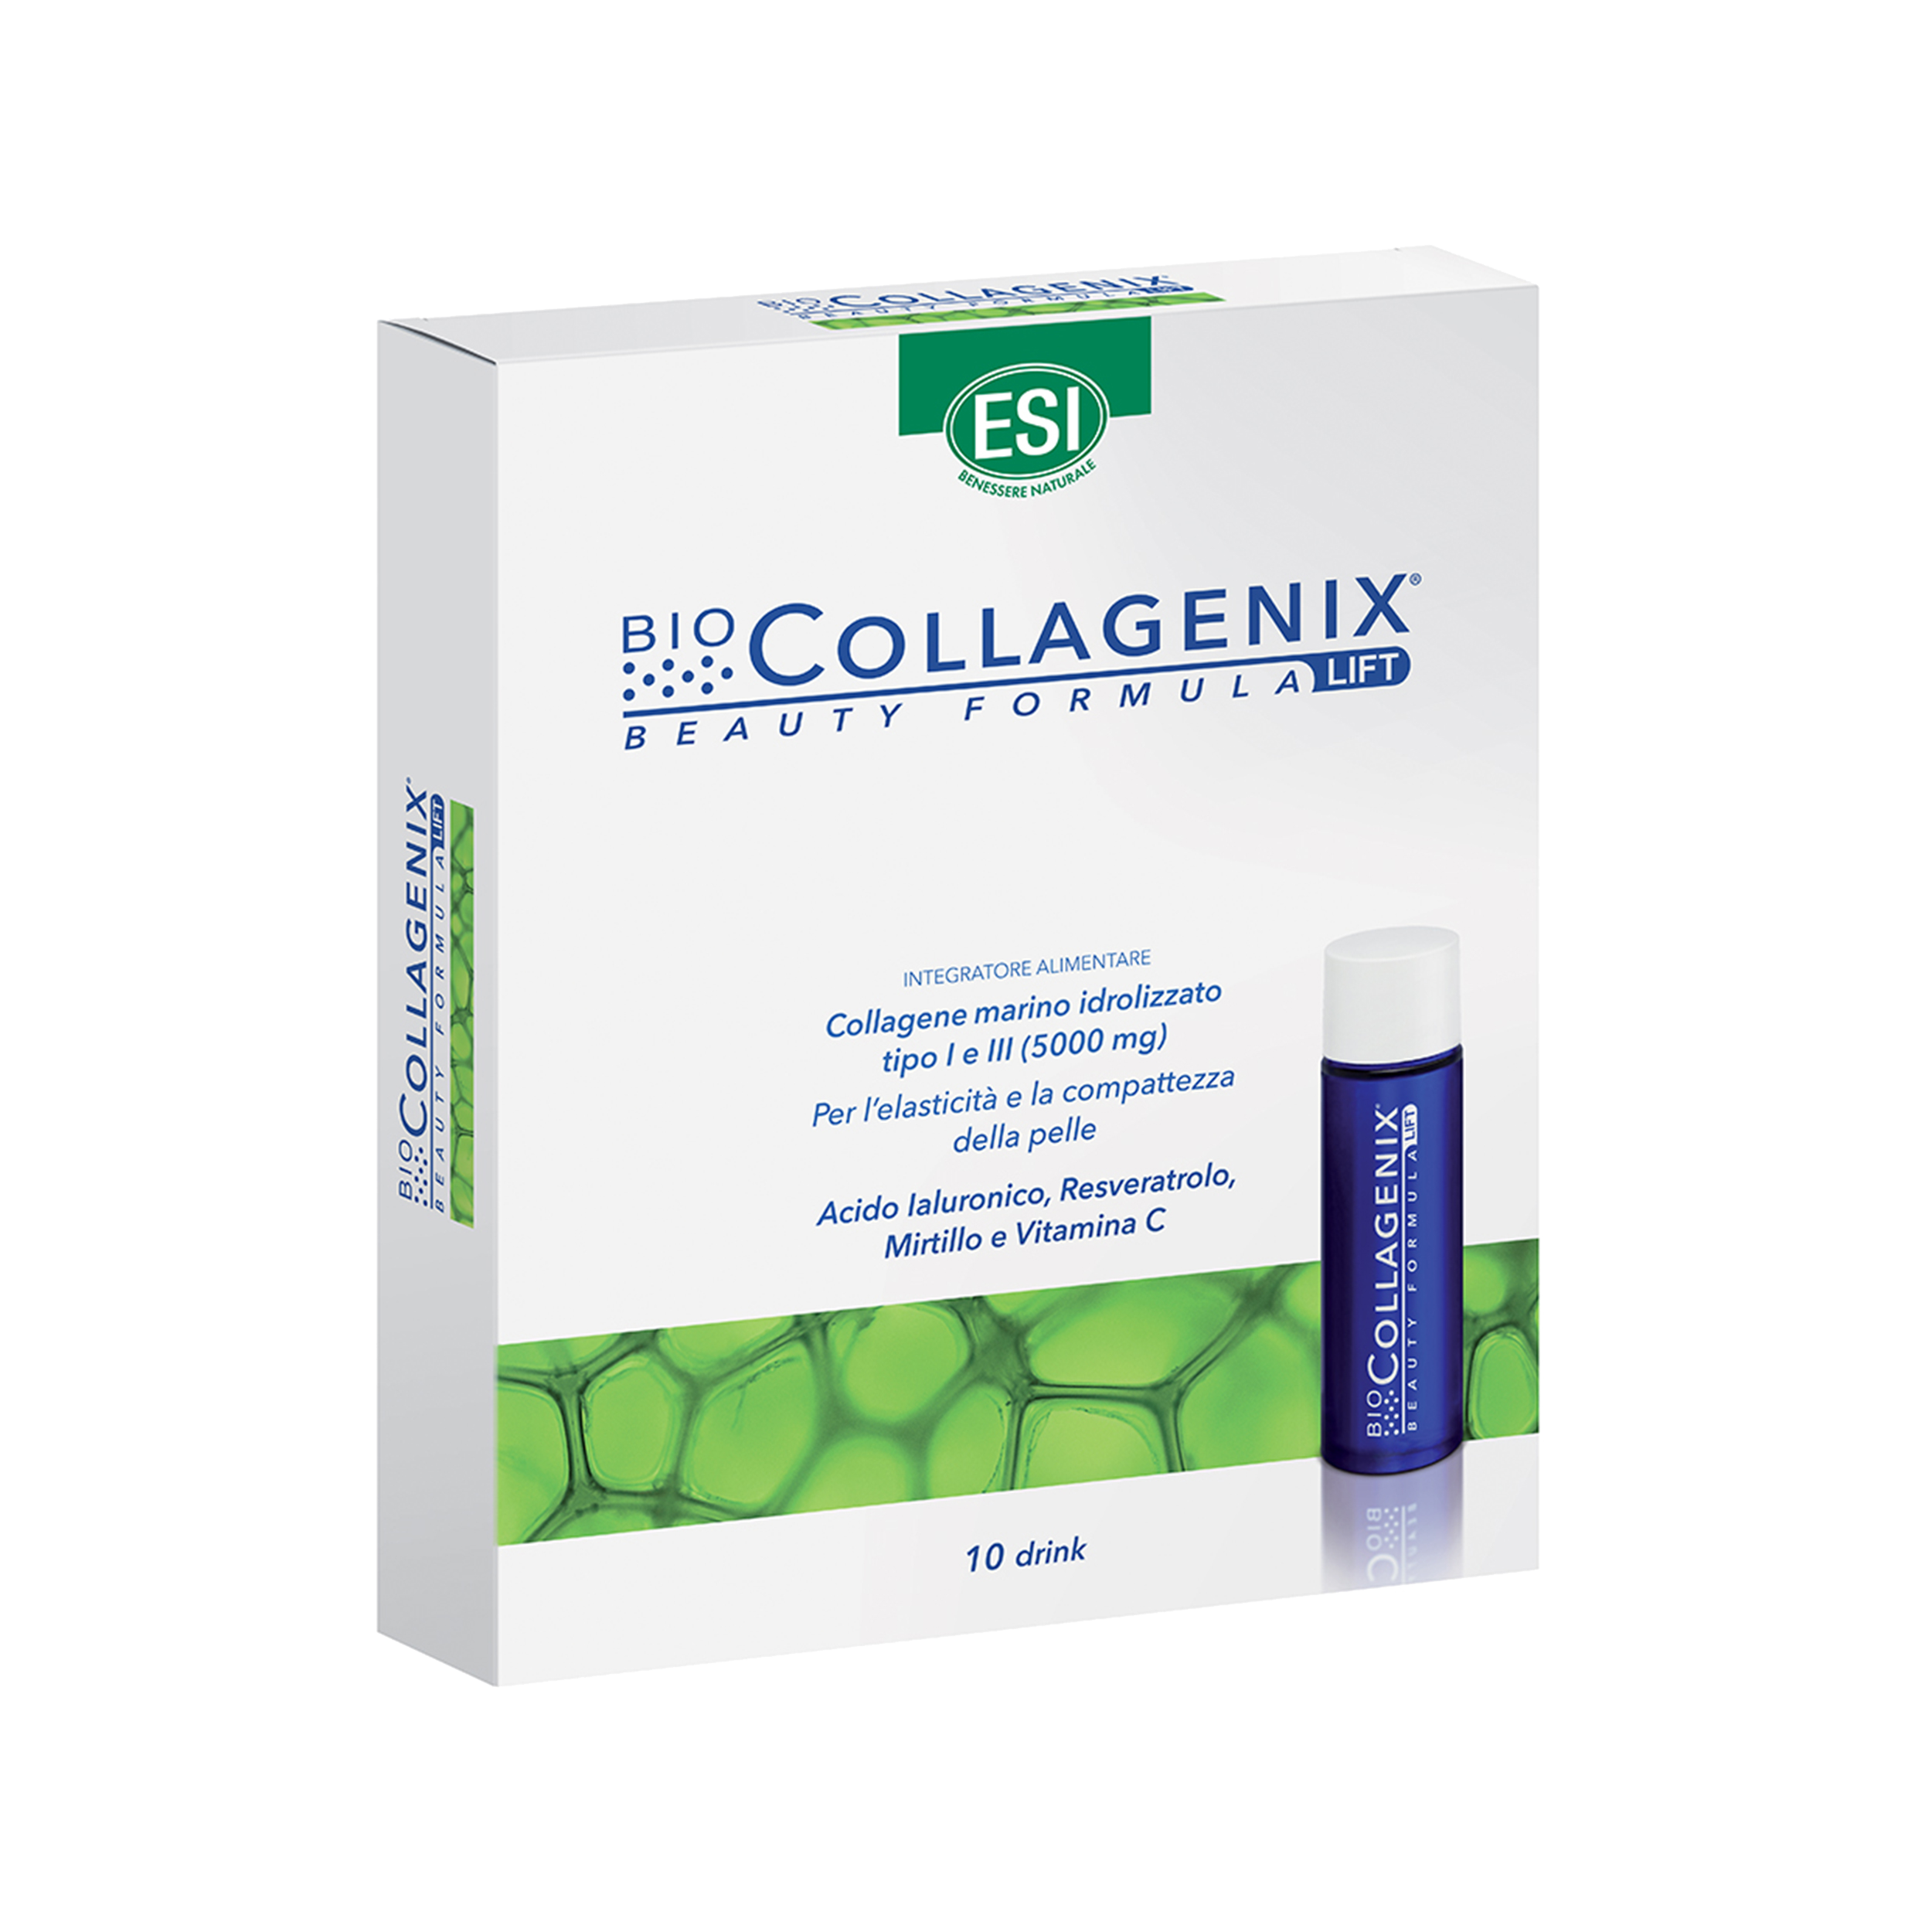 BioCollagenix drink